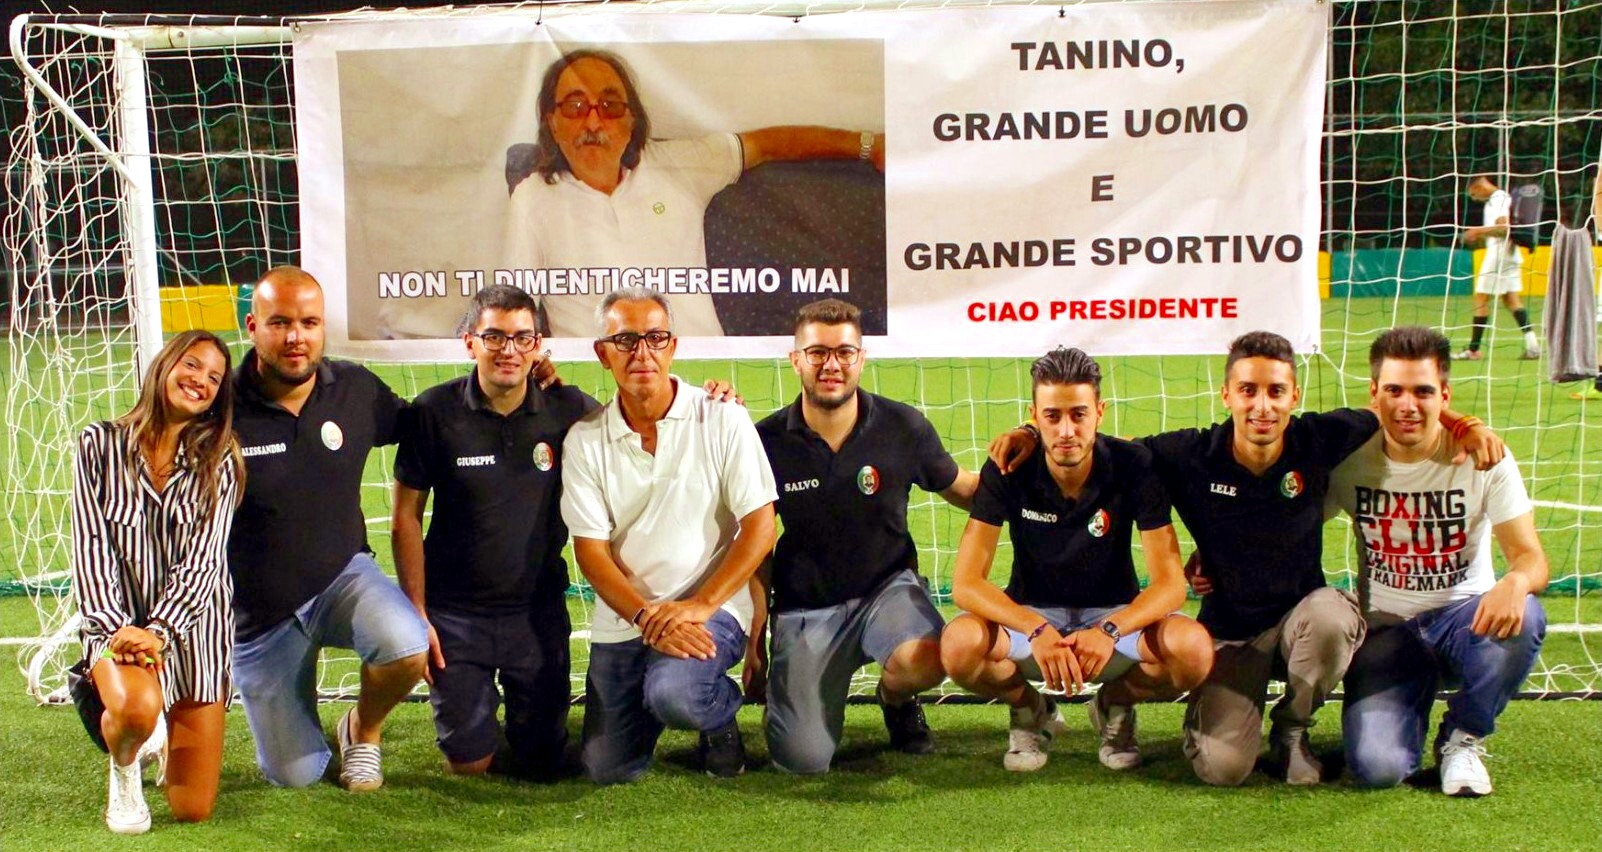 Giardini Naxos: “Don Bosco Cup” di Calcio a 5 nel ricordo di Tanino Brunetto